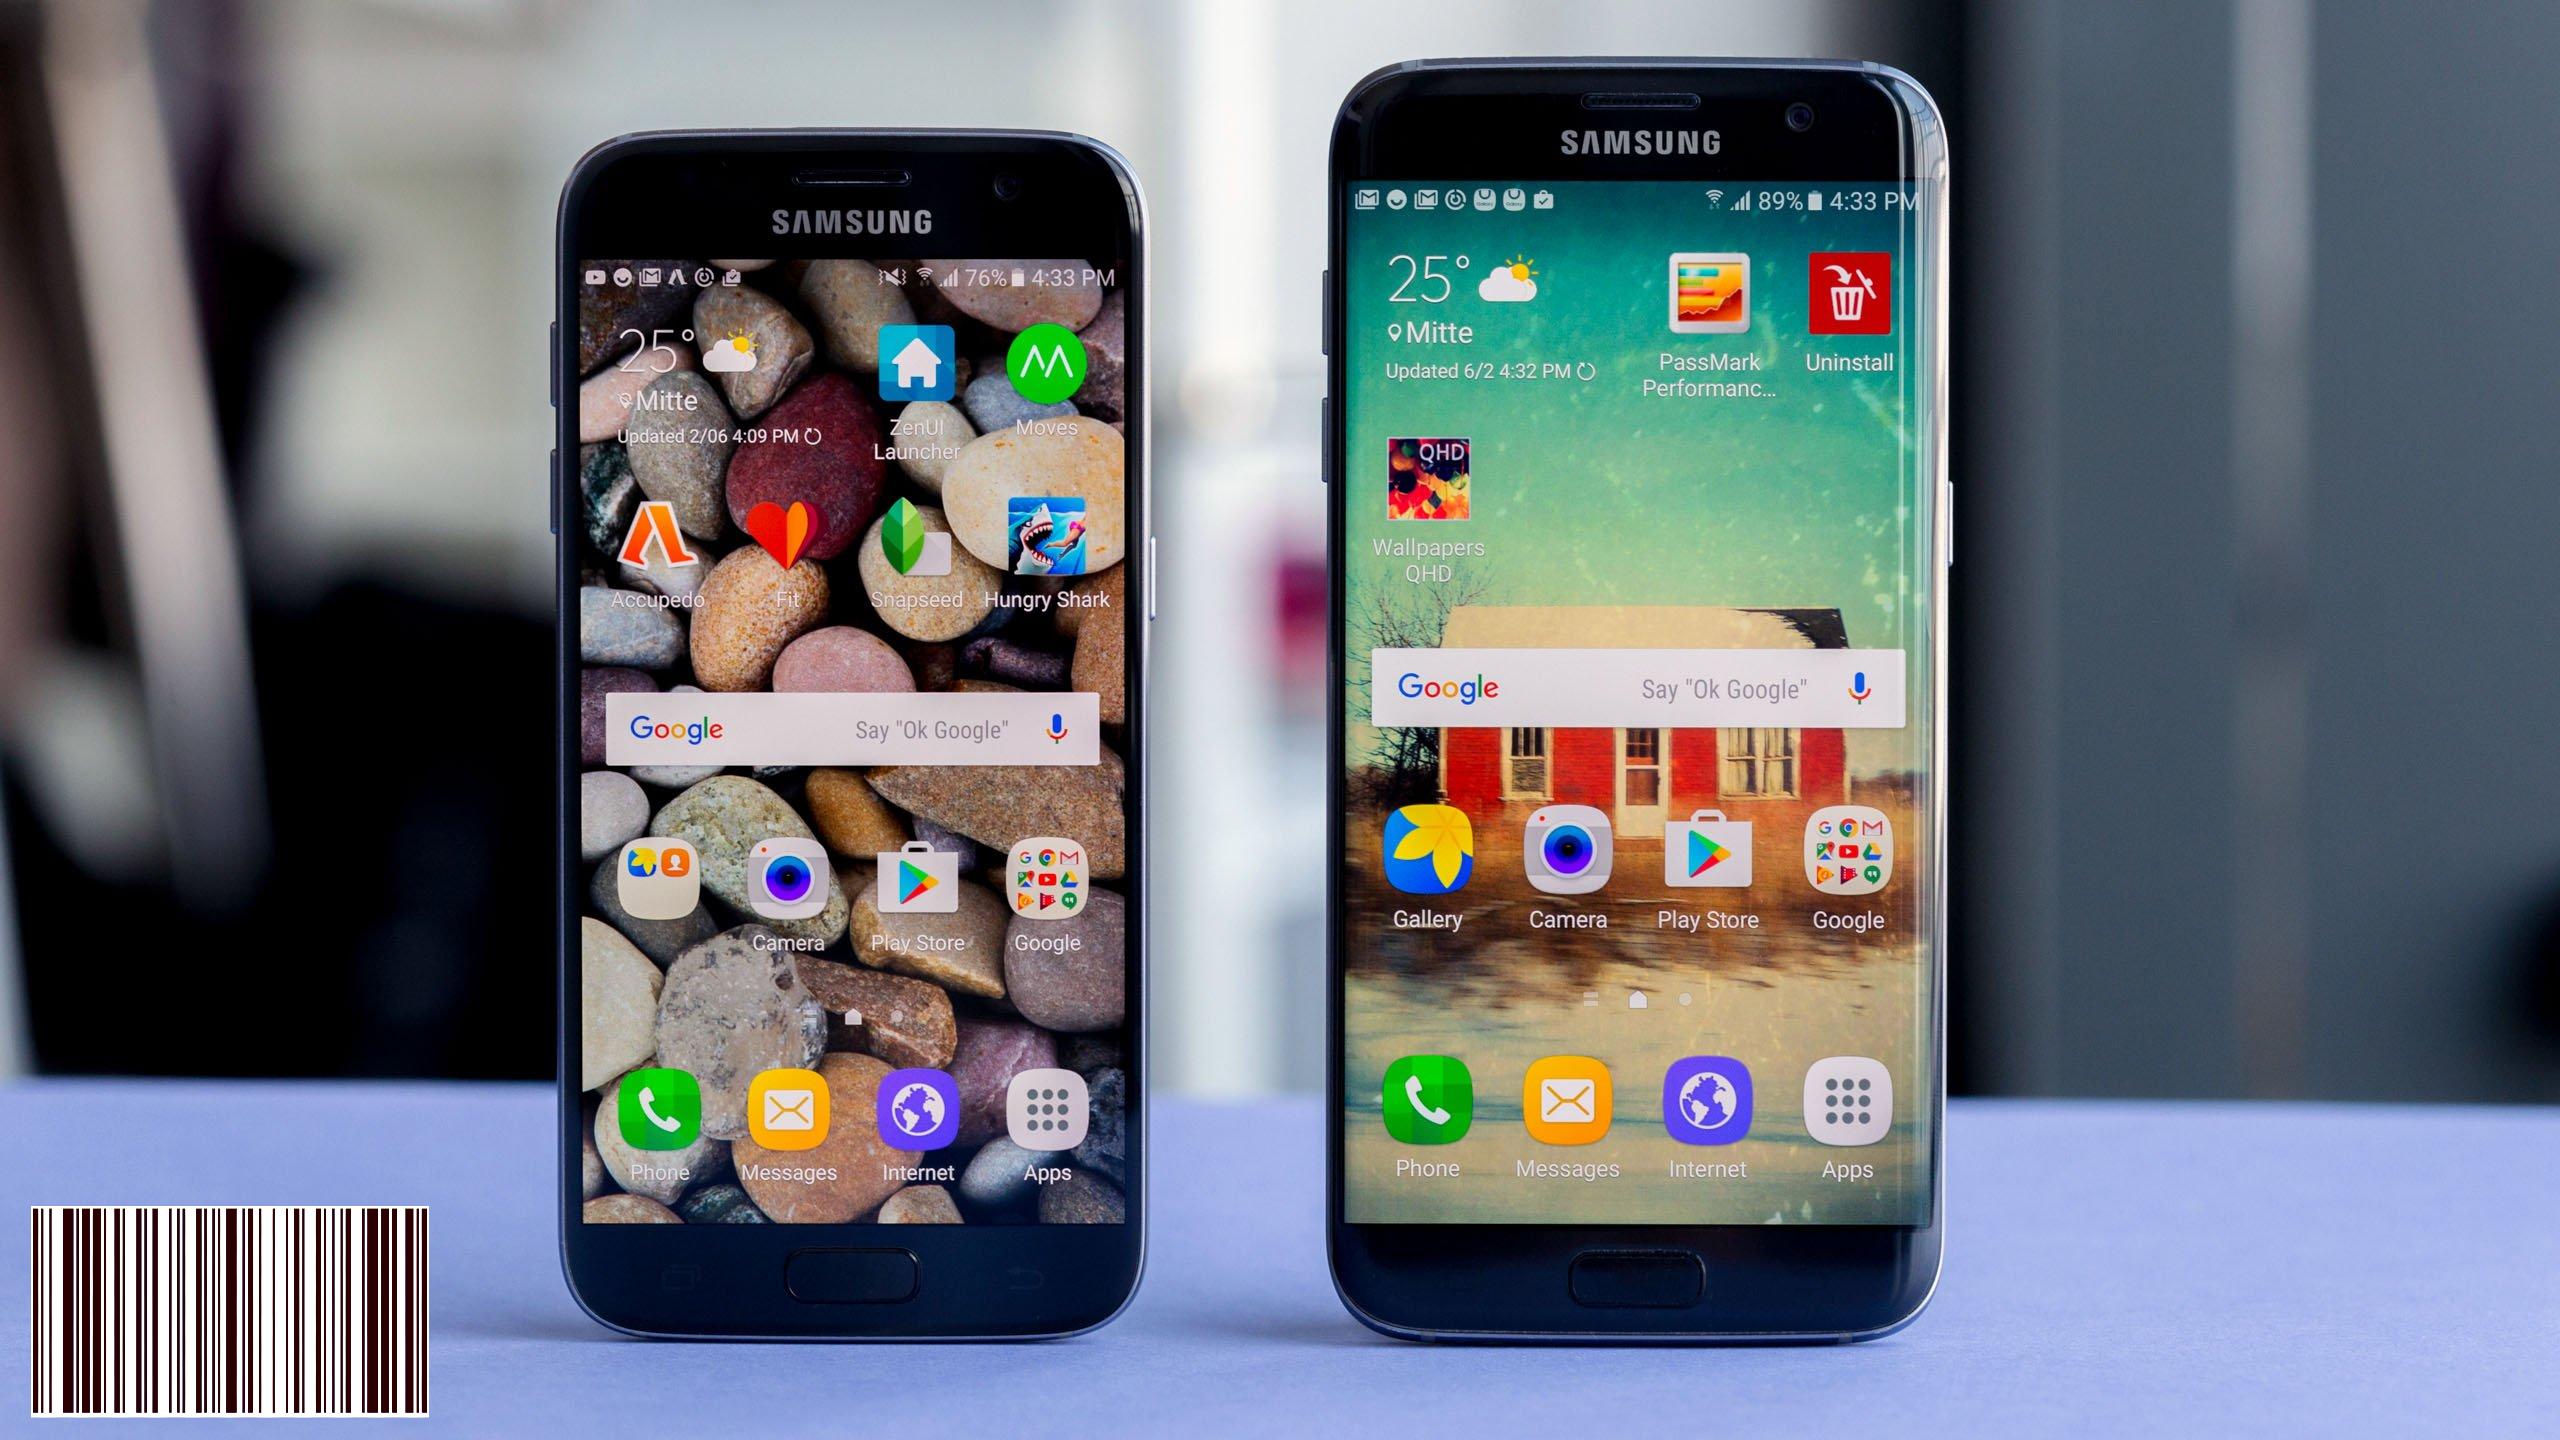 يكشف الاختبار أن جهاز Galaxy S7 البرازيلي أفضل من الإصدار الأمريكي